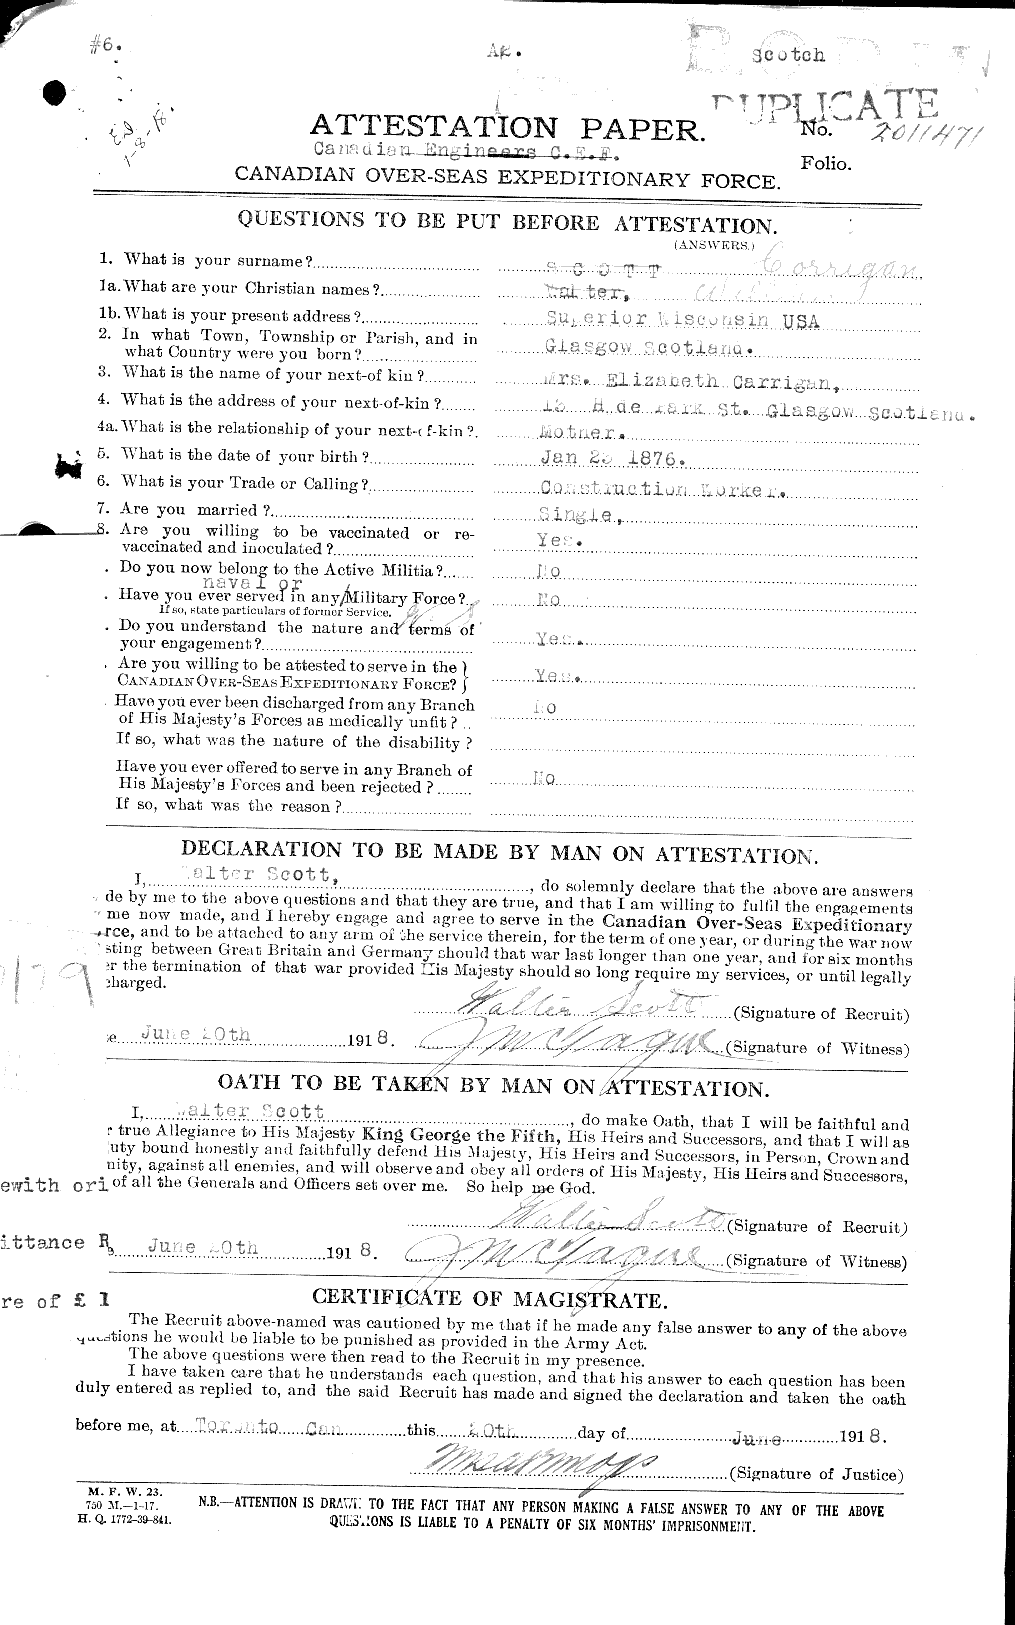 Dossiers du Personnel de la Première Guerre mondiale - CEC 005489a